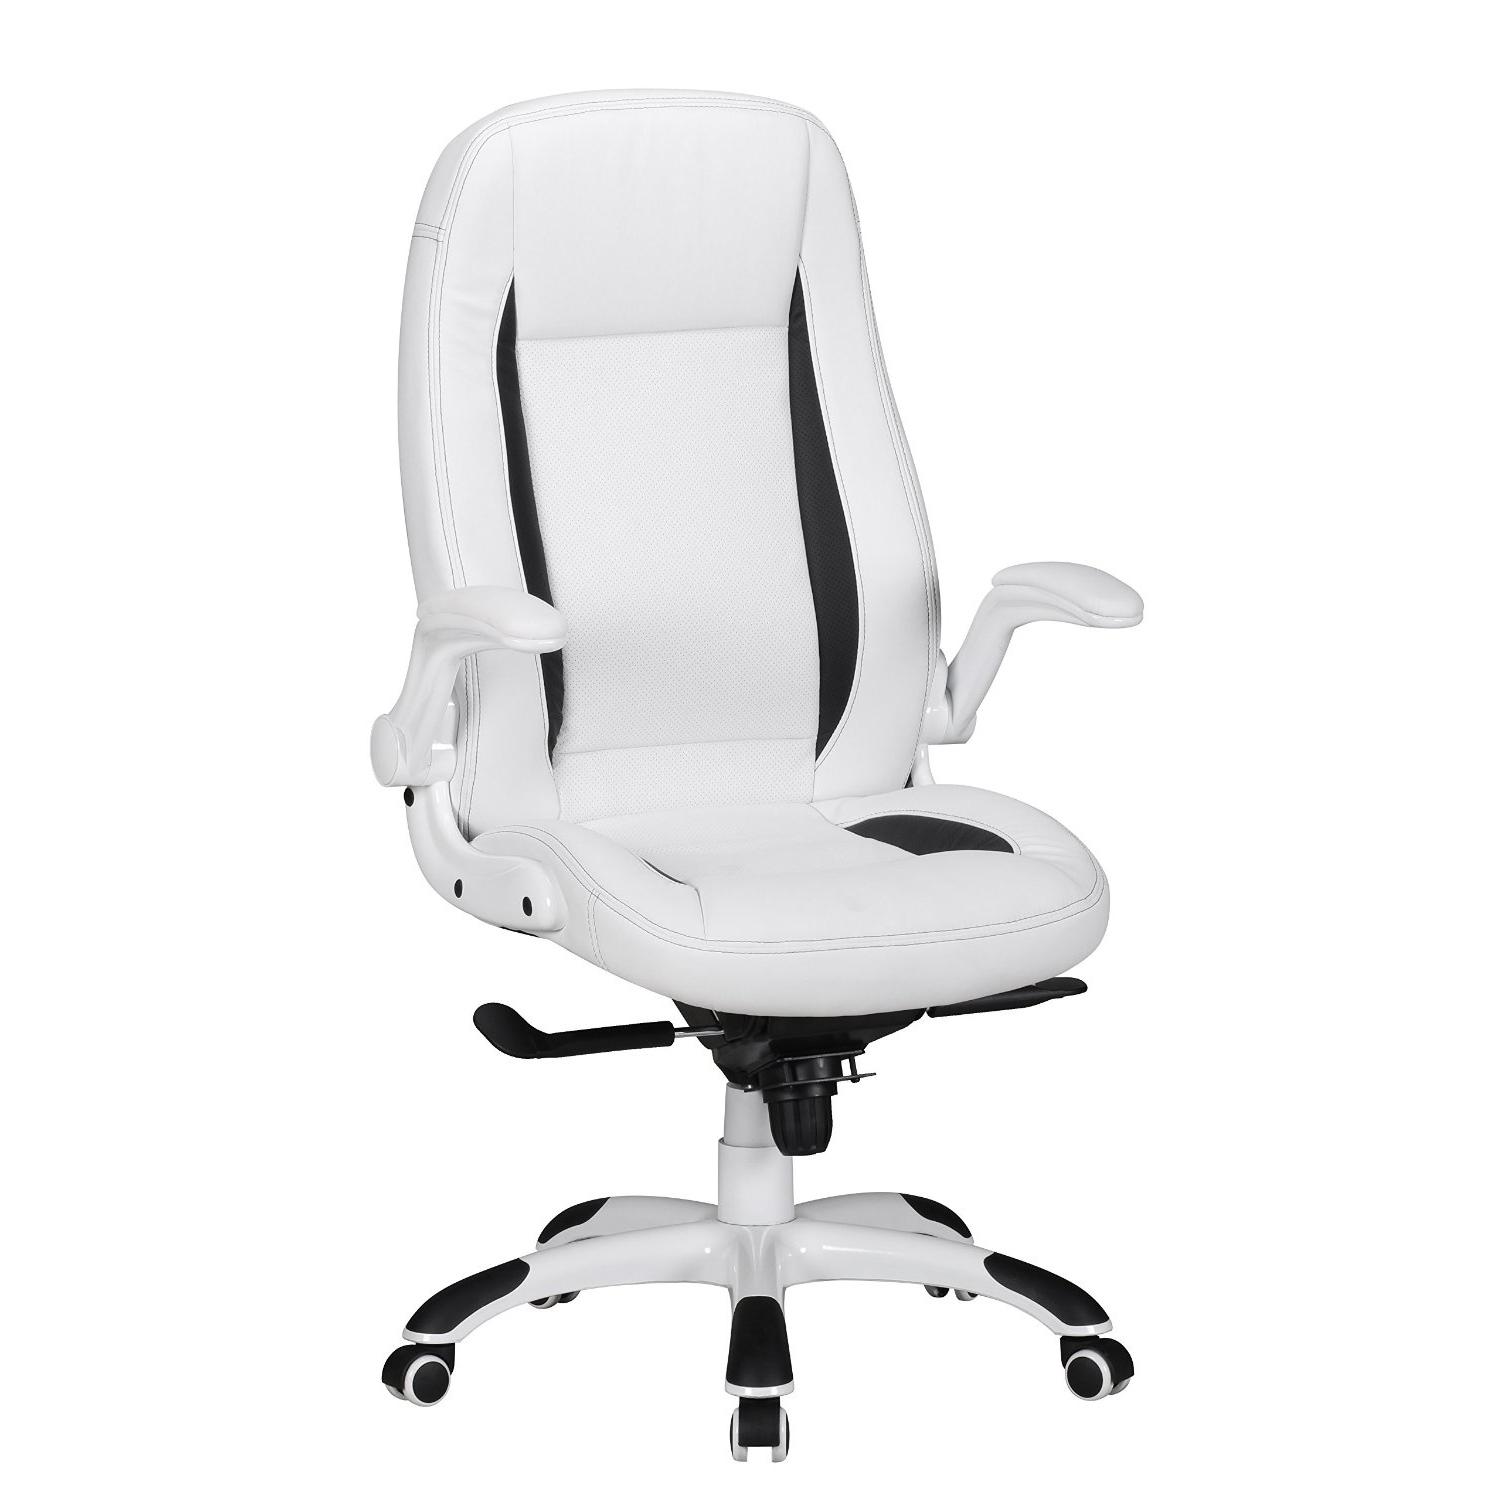 Cadeira MONTREAL, Design Gaming, Pele Sintética, Uso Profissional 8h, Branco